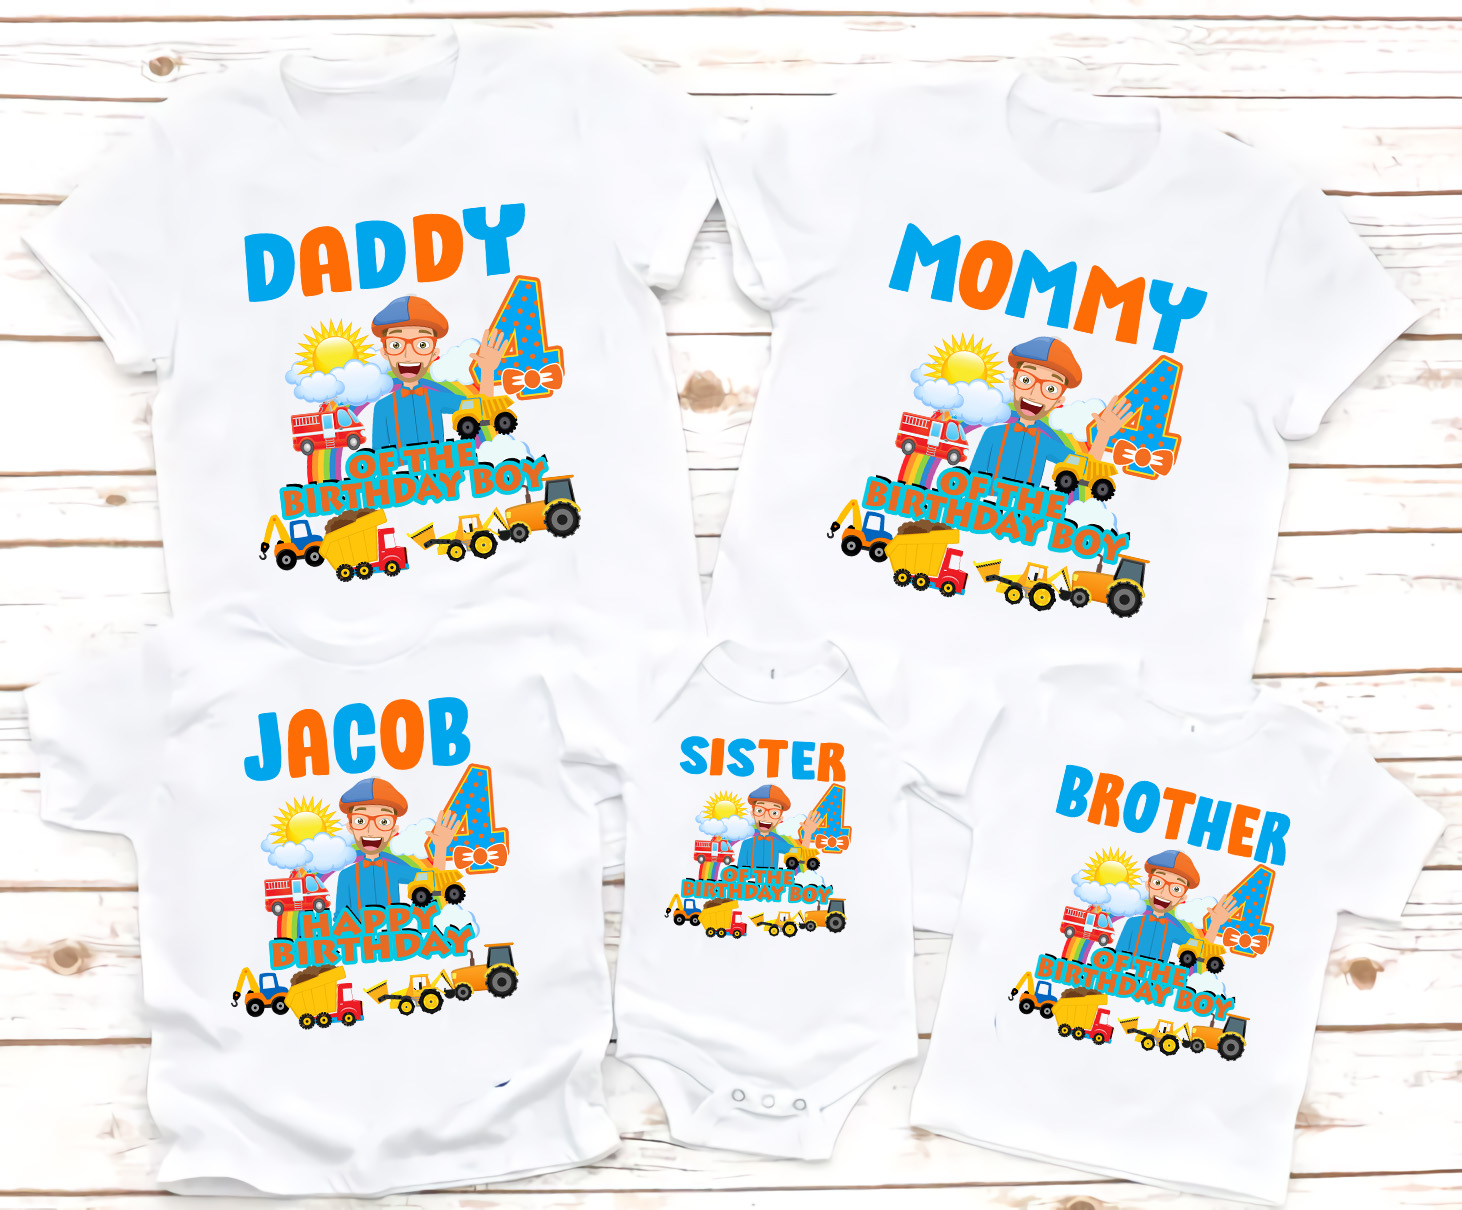 Blippi Birthday Shirts, Family Blippi shirts, Blippi birthday Theme Shirts, Matching Family Party Shirts